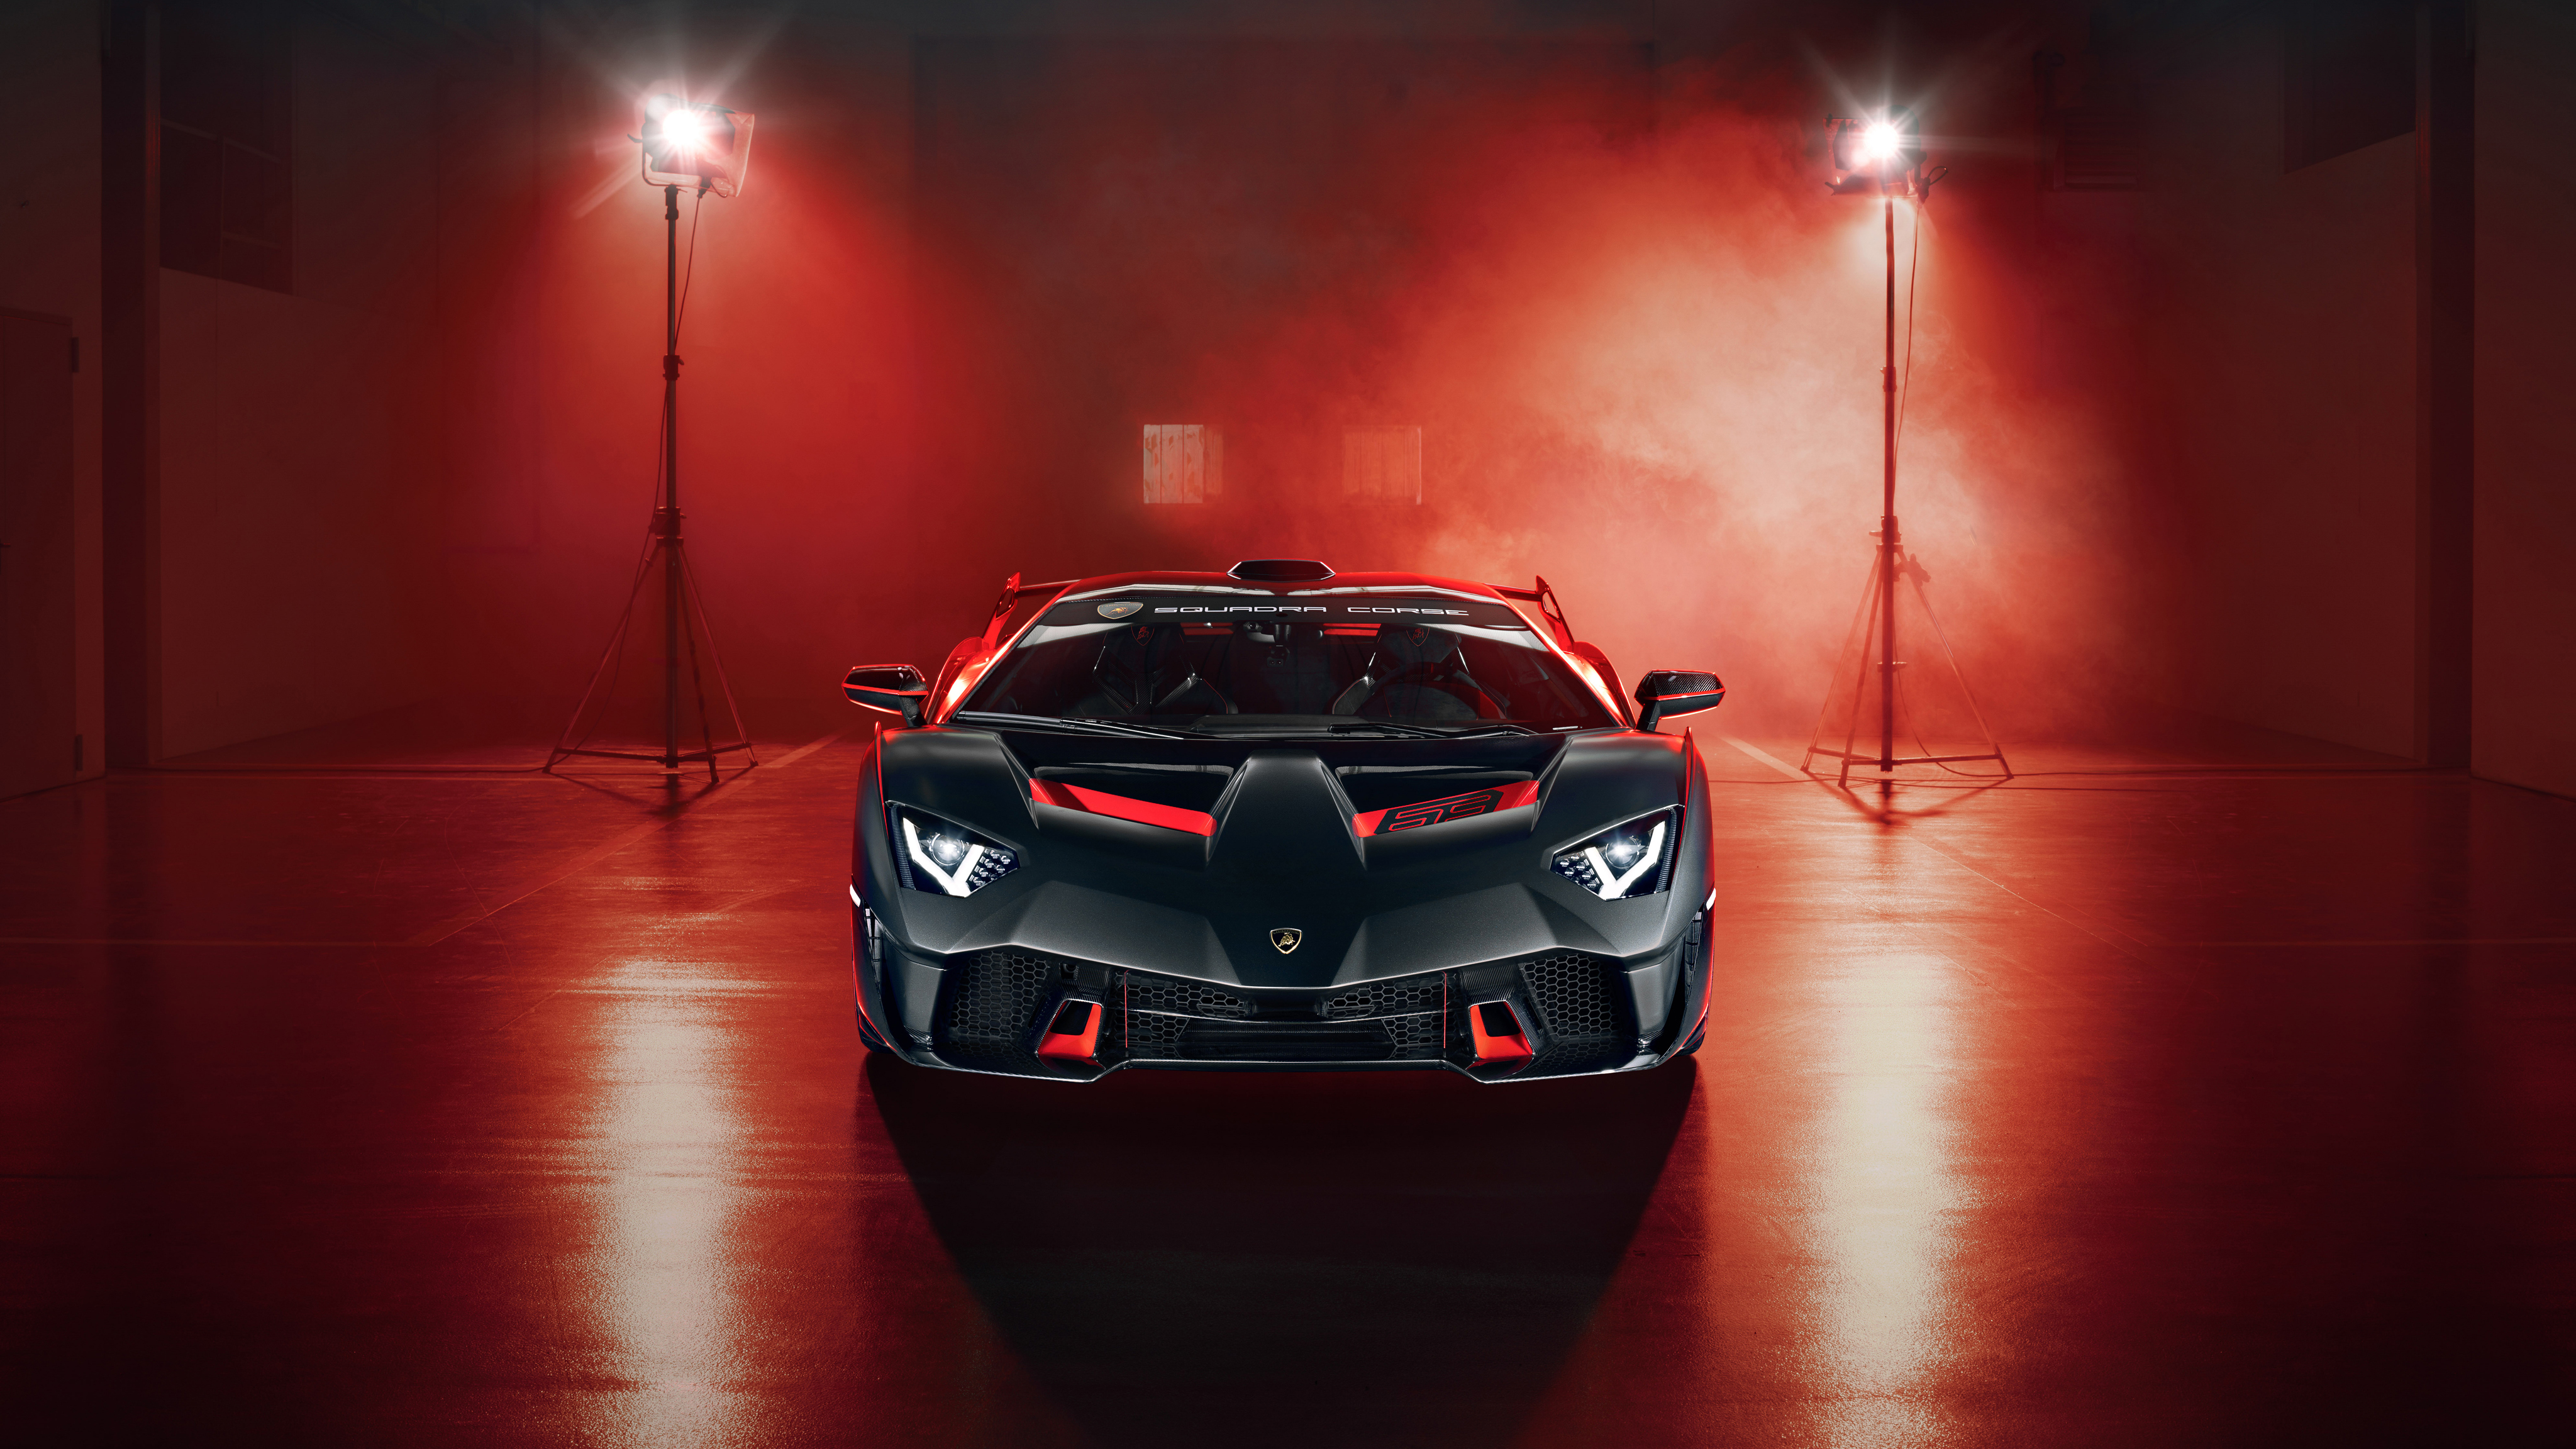 Lamborghini SC18 2019 4K